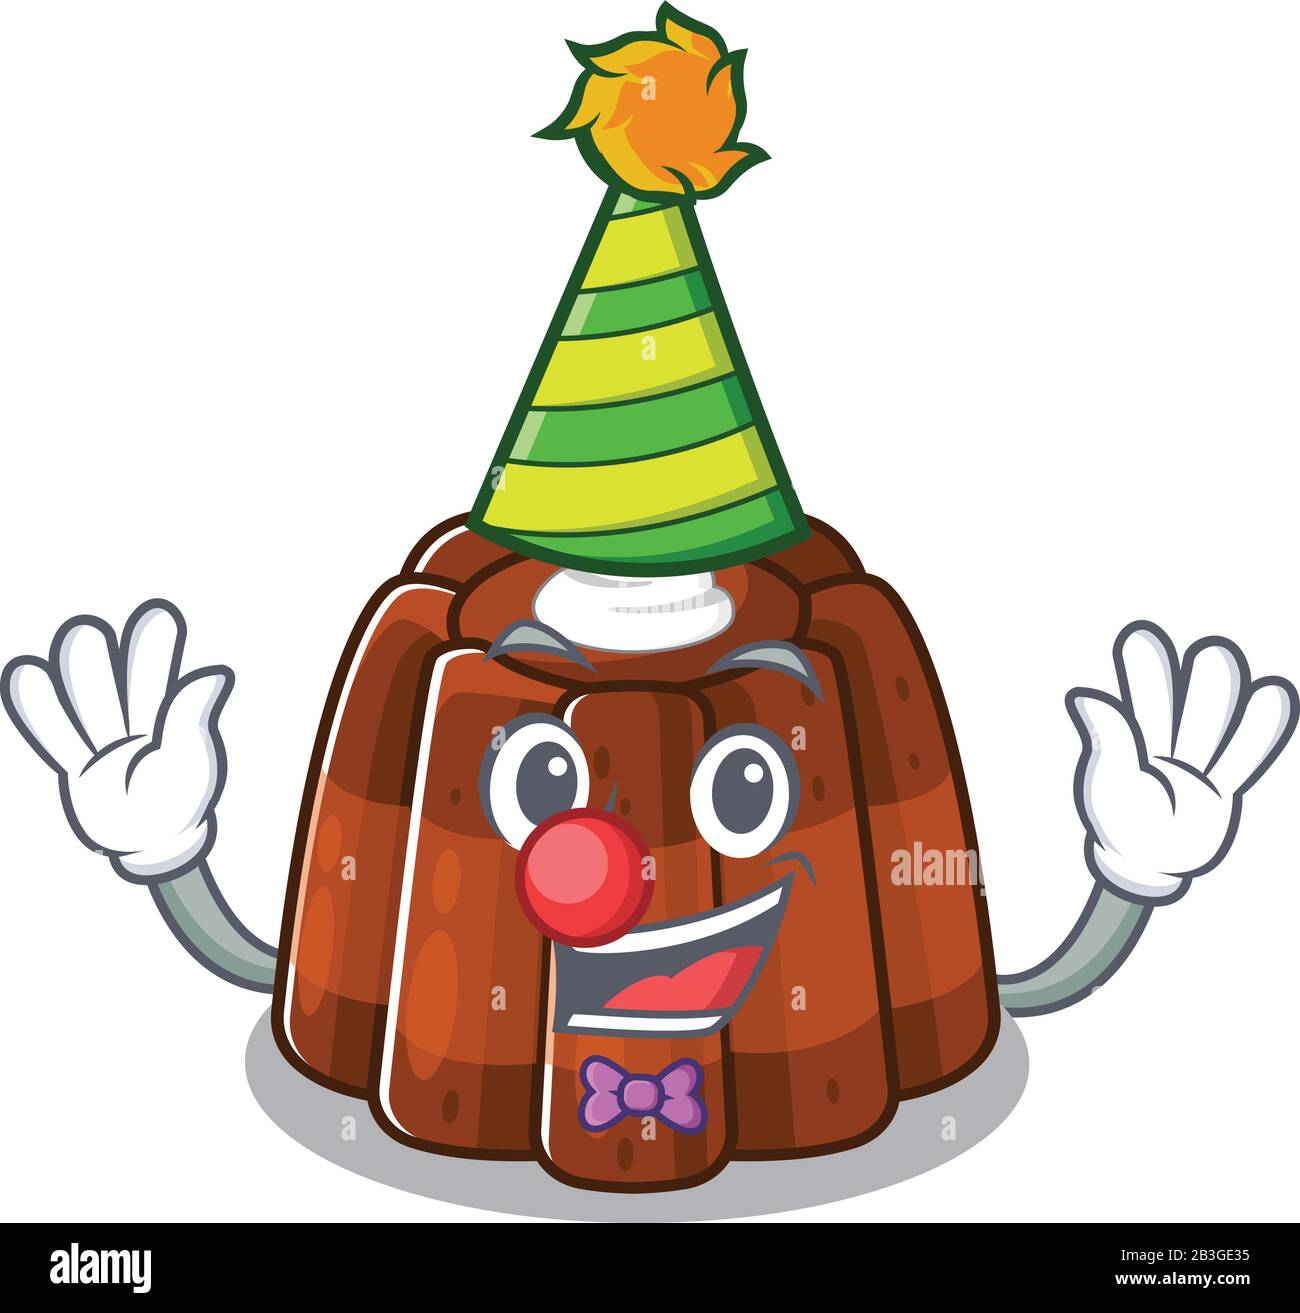 Drôle Clown chocolat pudding dessin de mascotte de personnage de dessin  animé Image Vectorielle Stock - Alamy